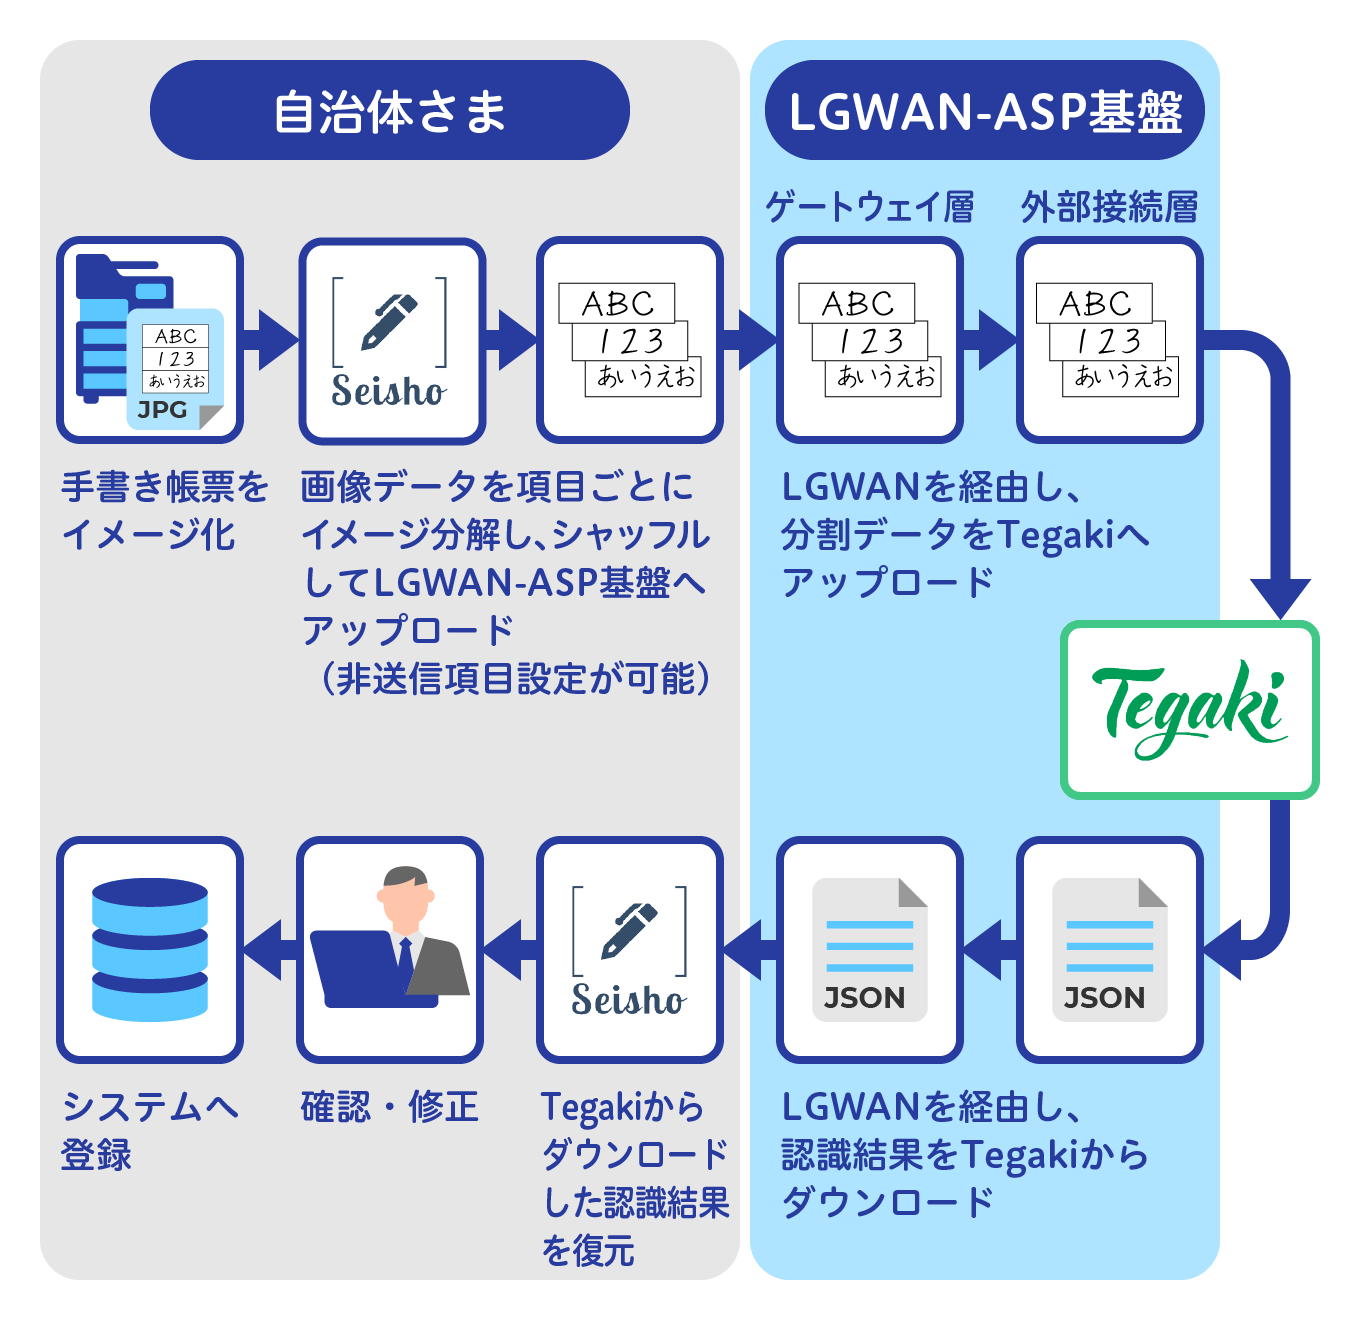 LGWAN-ASPサービスイメージ図